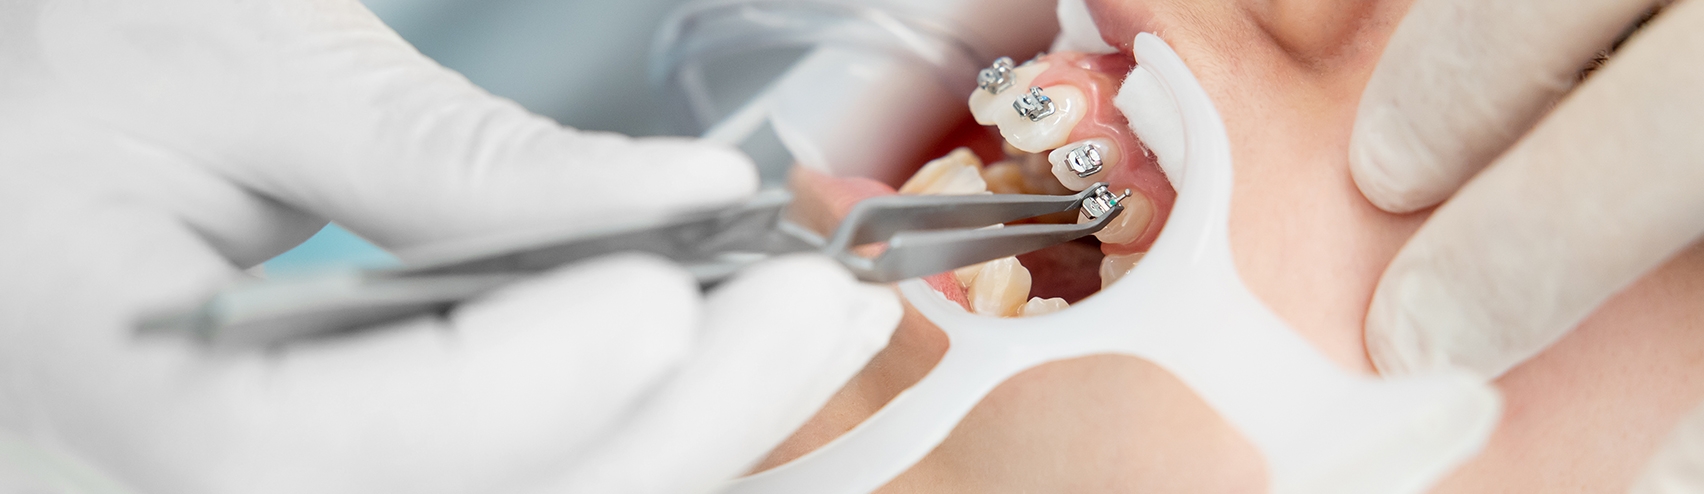 Consulta de ortodontia - Aparelho dentário